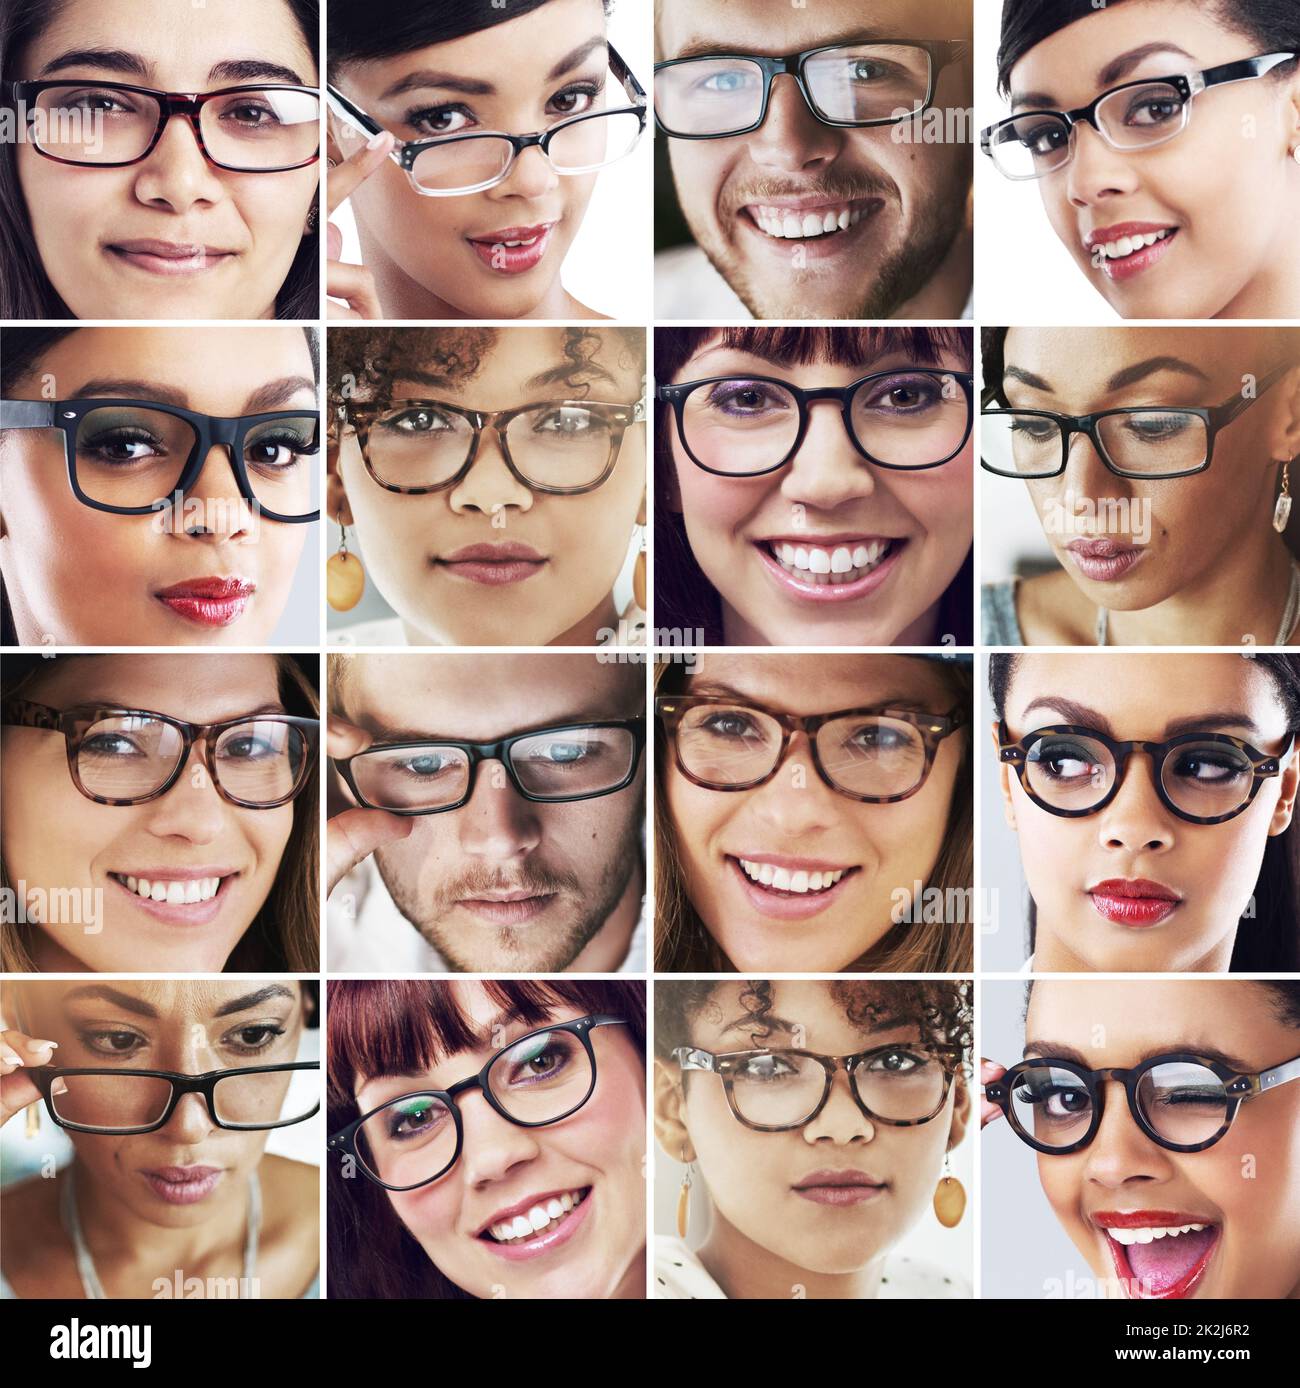 Varietà di visioni. Immagine composita di un gruppo diversificato di persone che indossano occhiali. Foto Stock